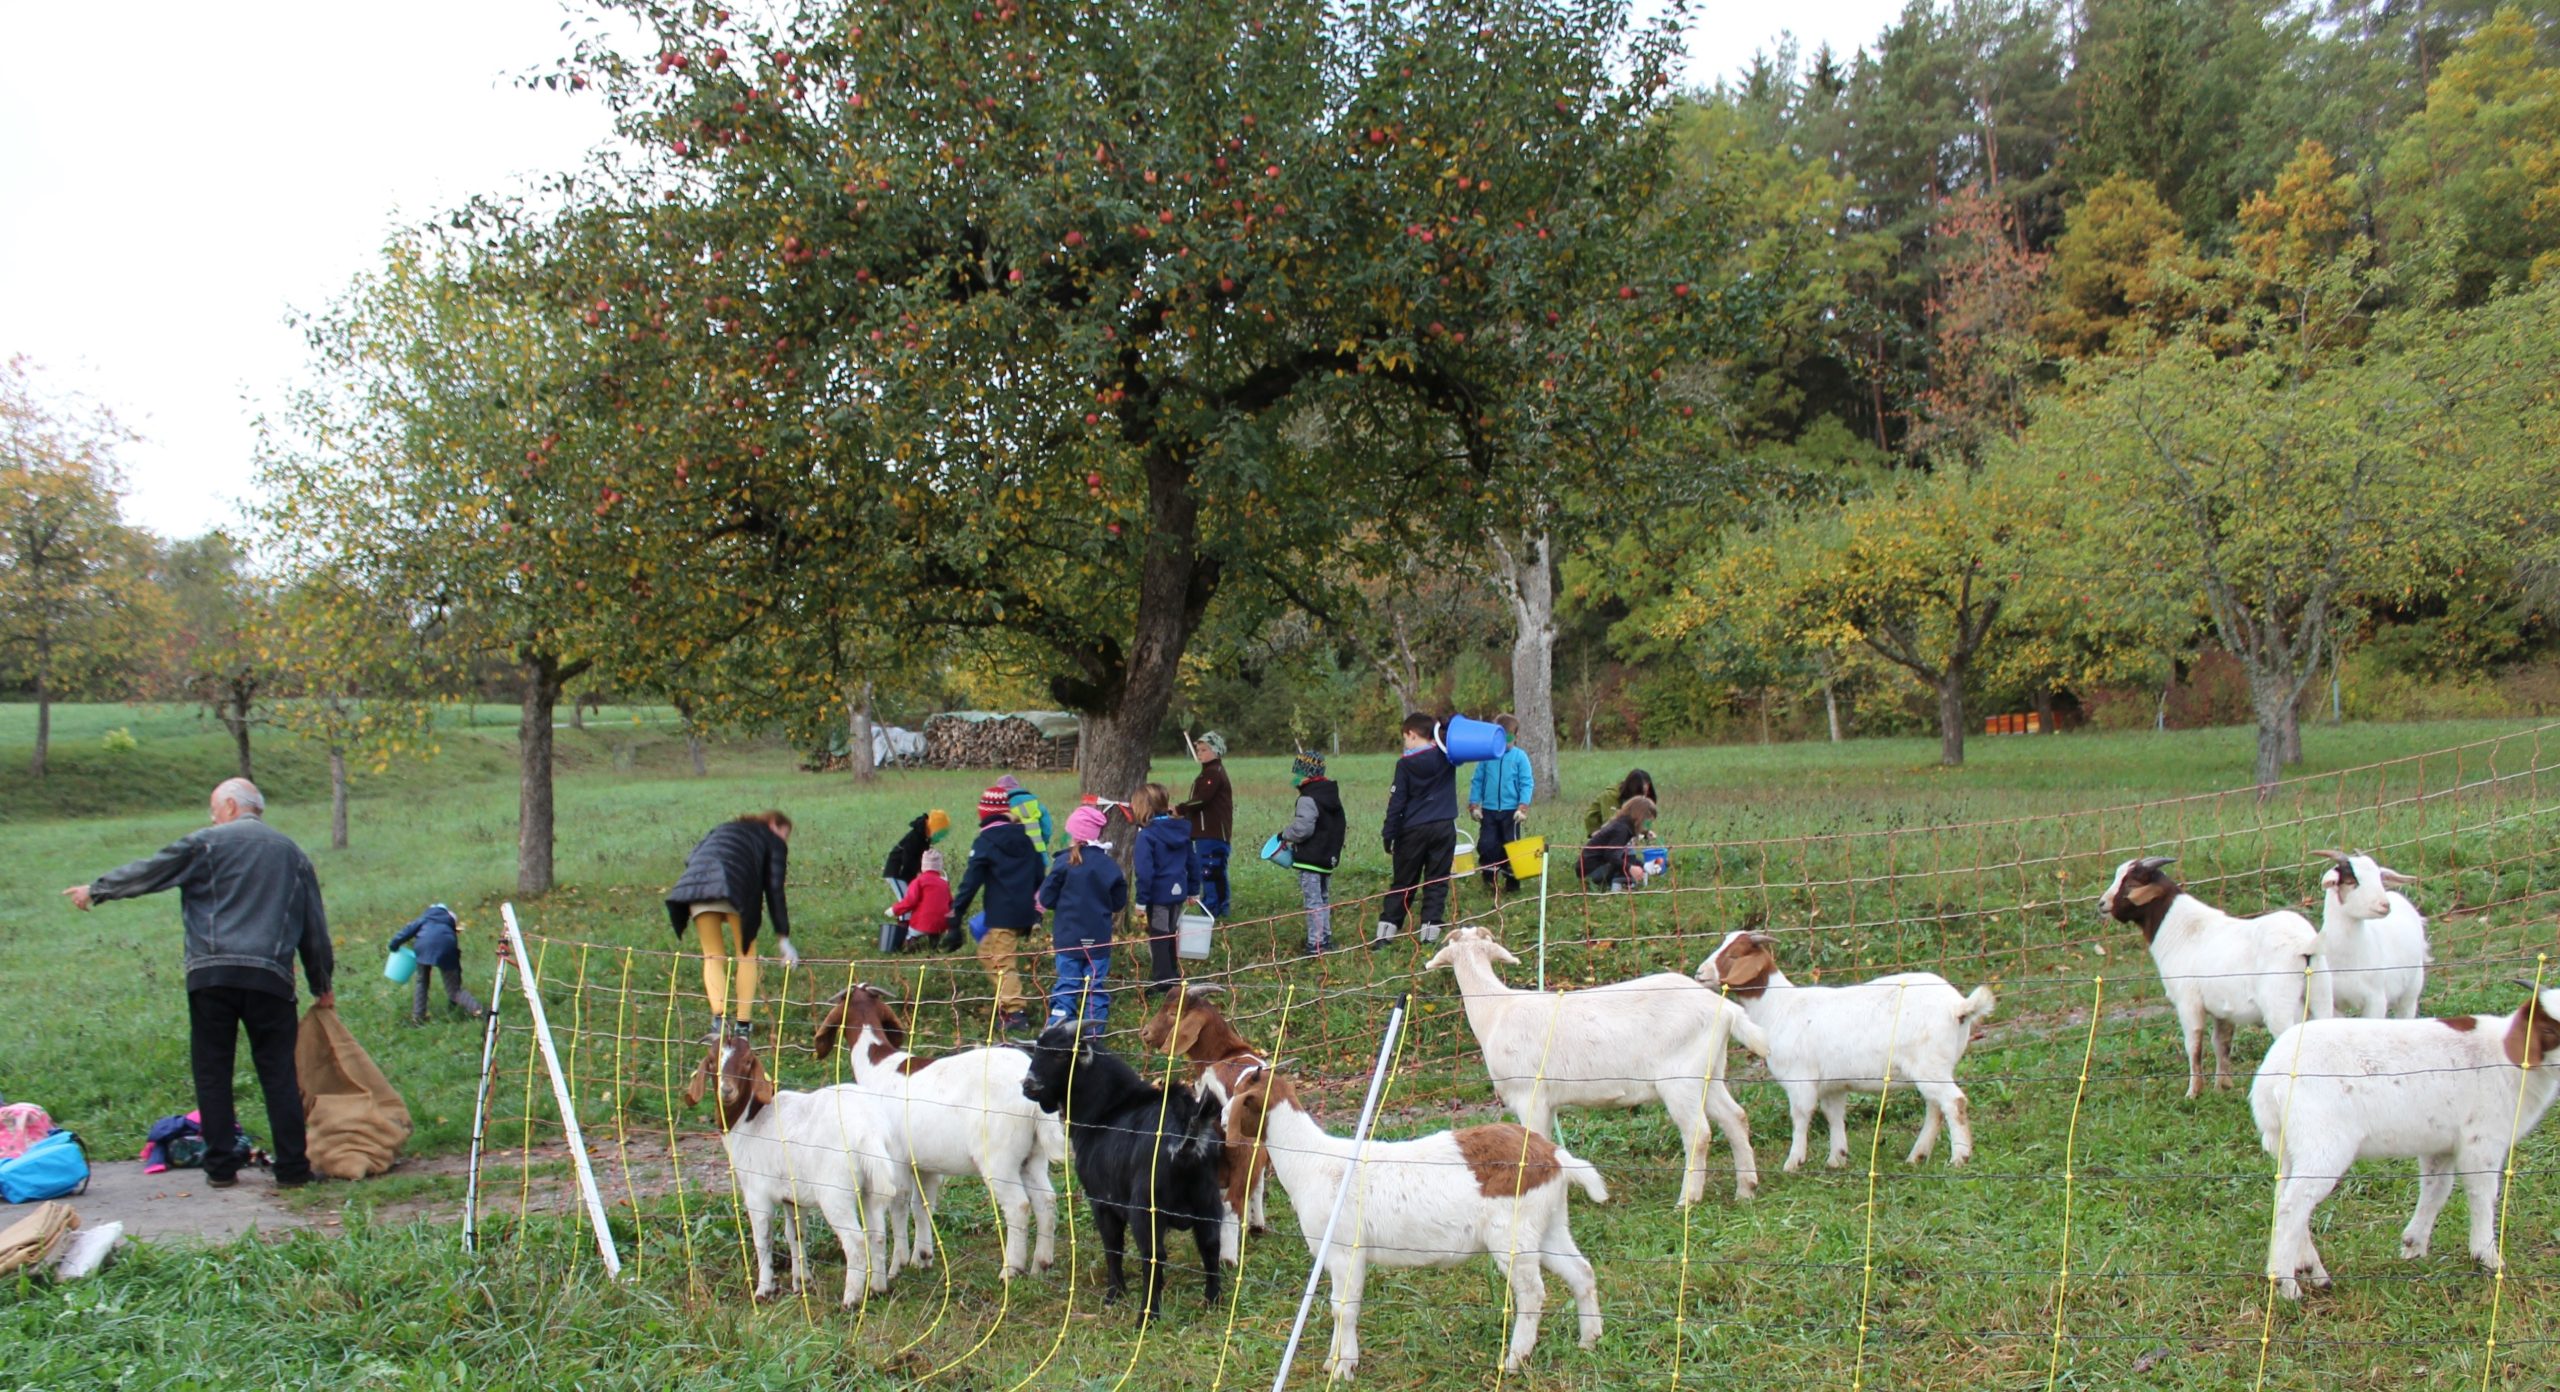 Kinder sammeln Äpfel um einen Apfelbaum, während die benachbarten Ziegen interessiert zuschauen.